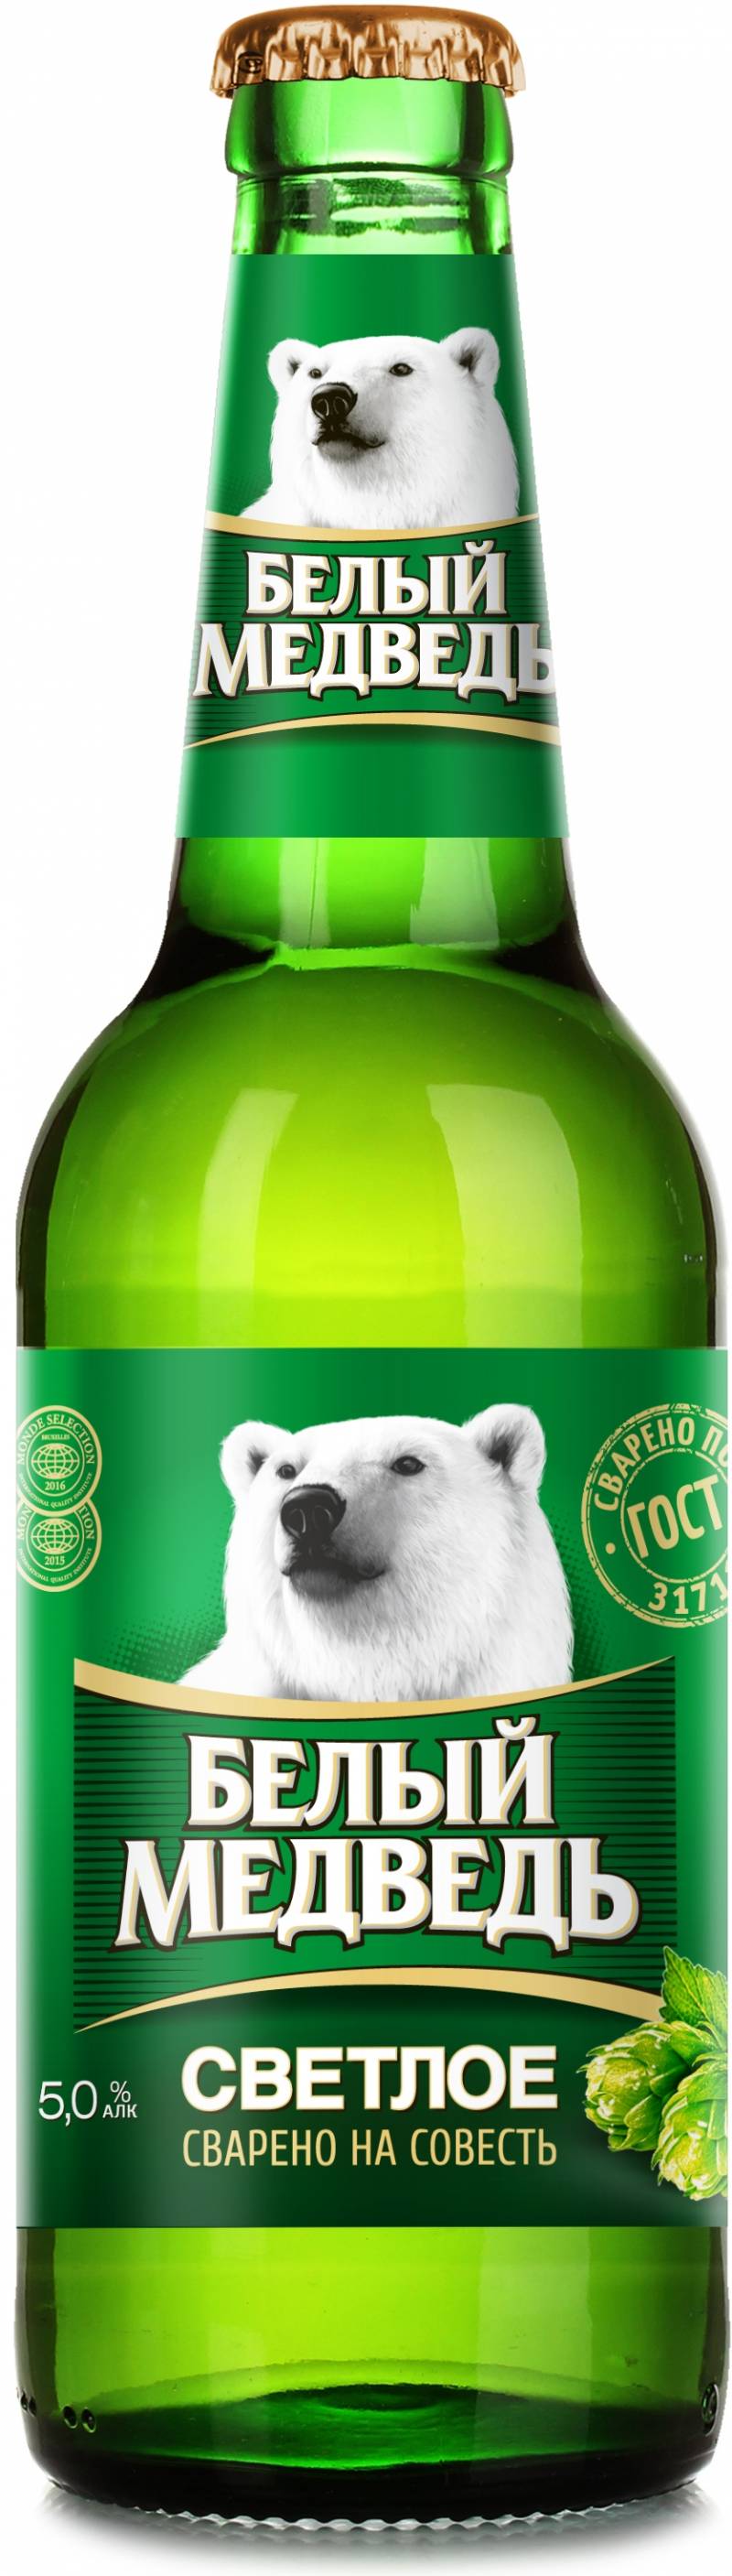 Пиво Белый Медведь  (светлое)  0,5 л. (Россия)